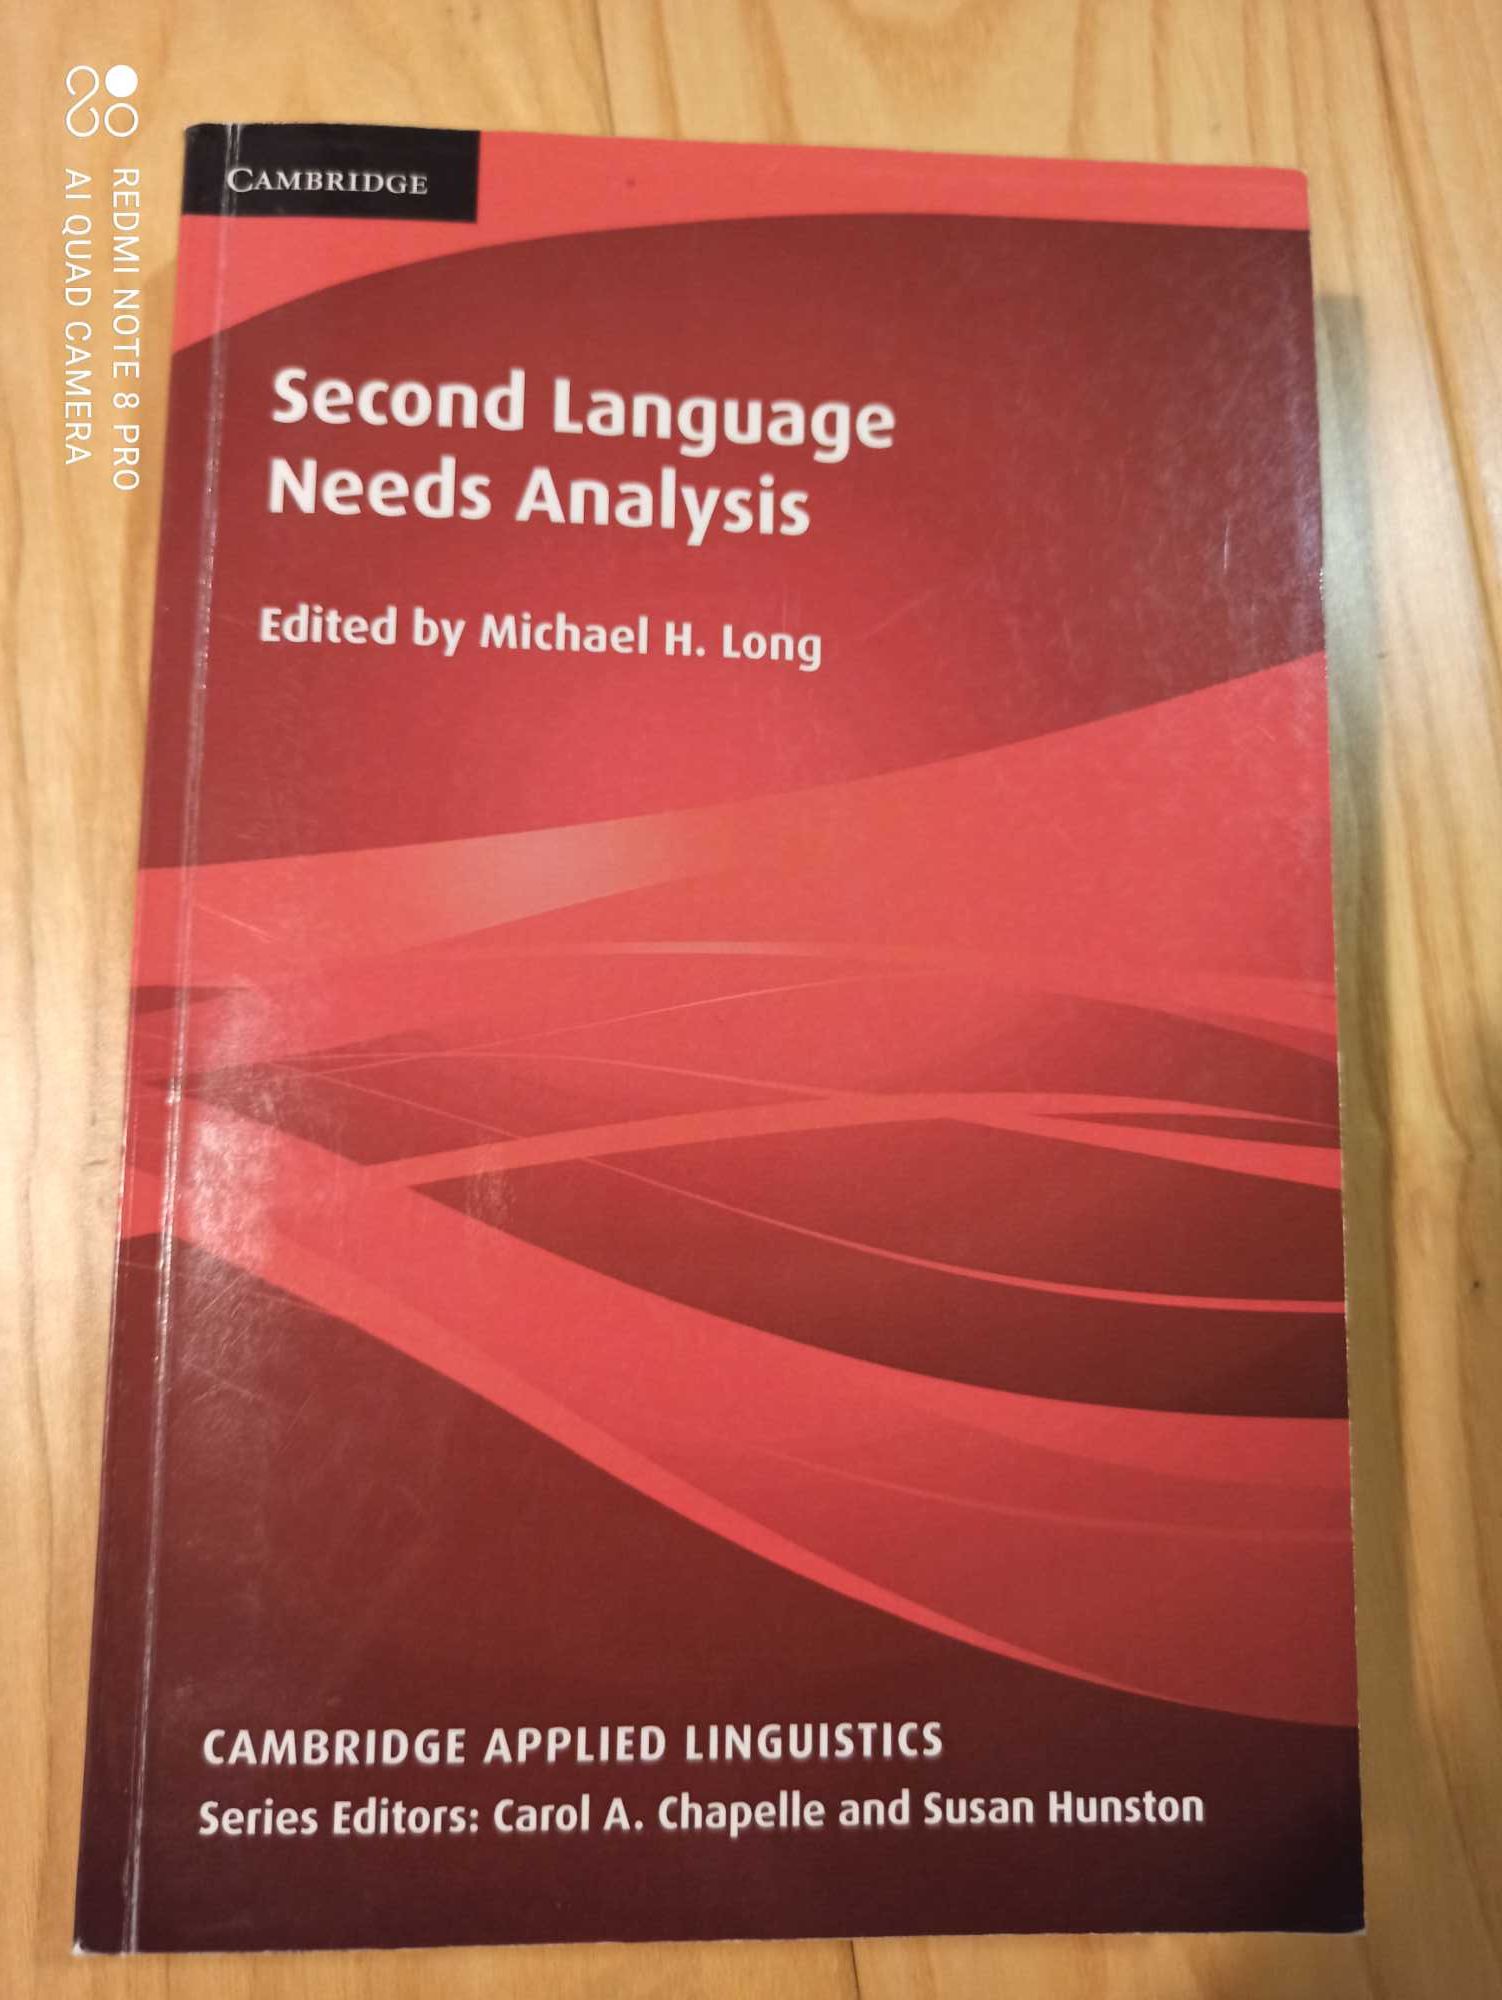 Second language needs analysis